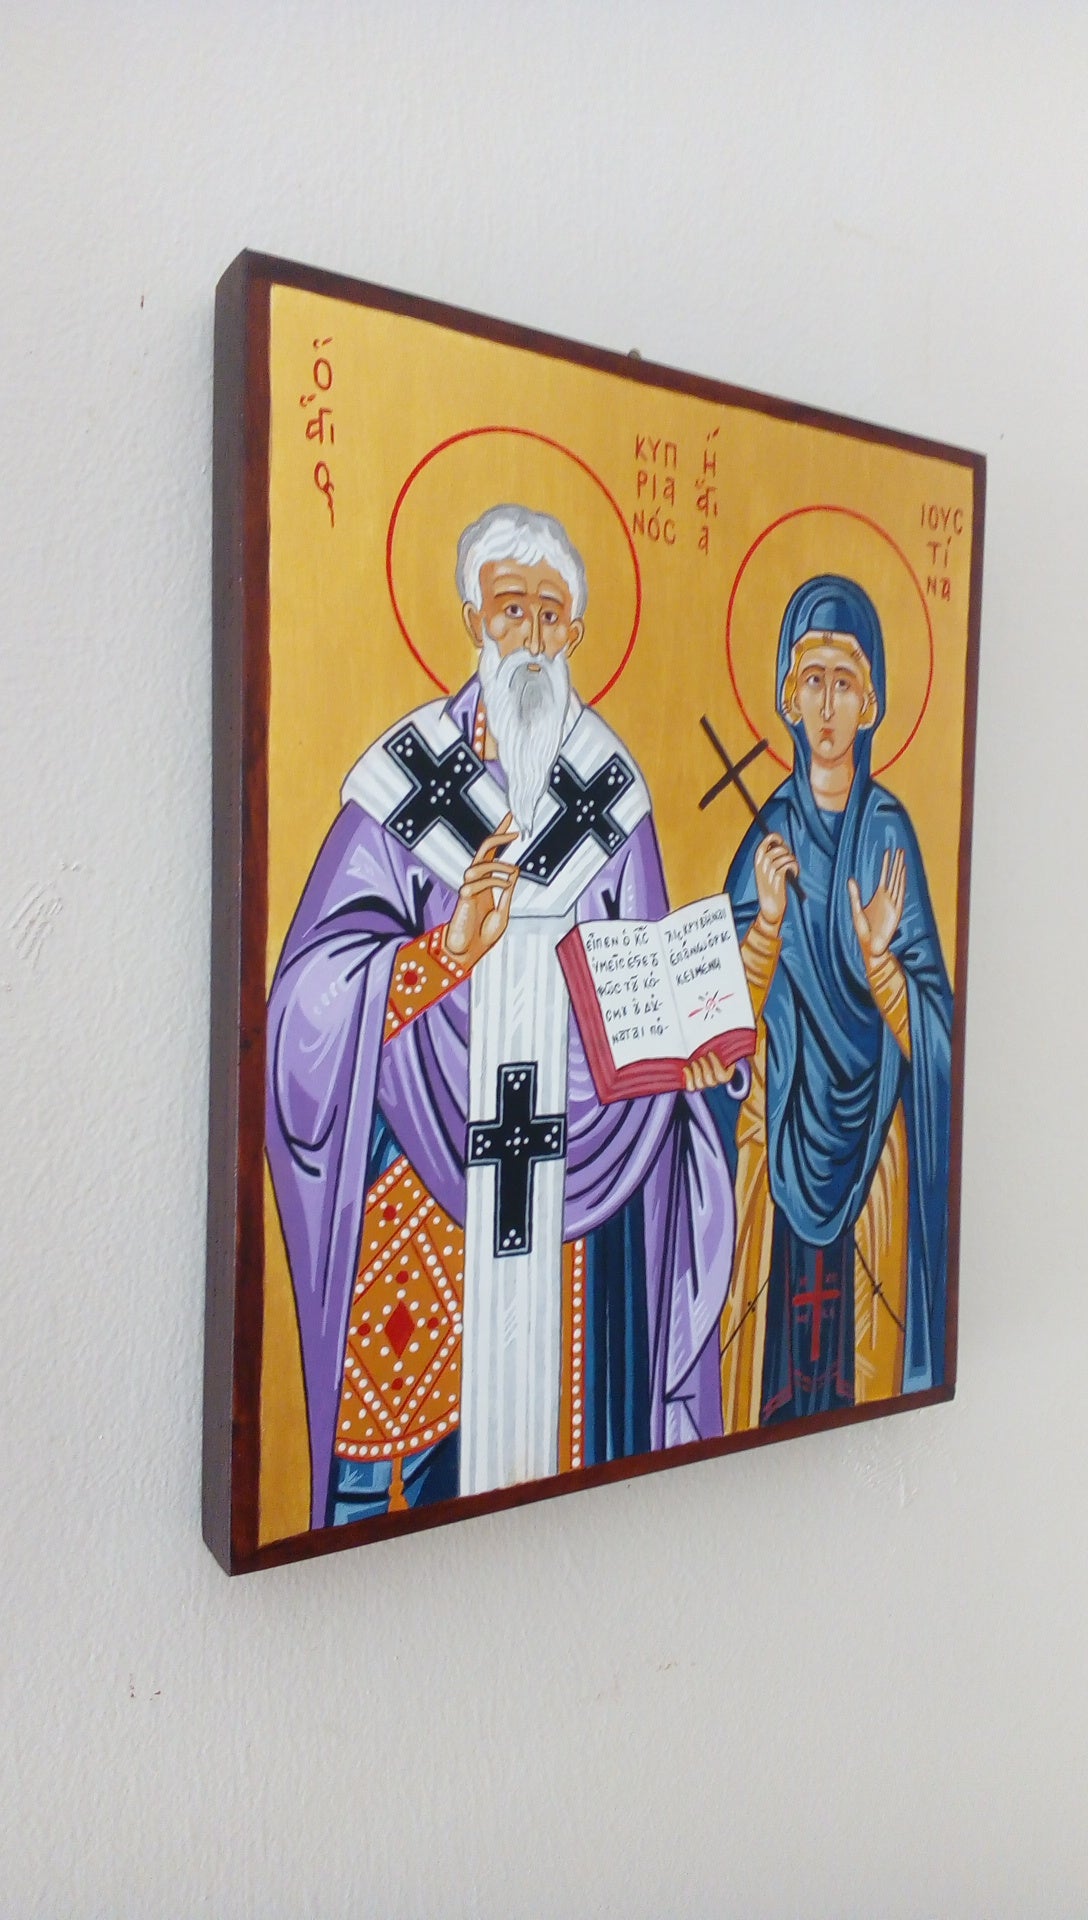 Saint Cyprian the Holy Martyr and Saint Justina the Virgin Martyr of Nicomidea